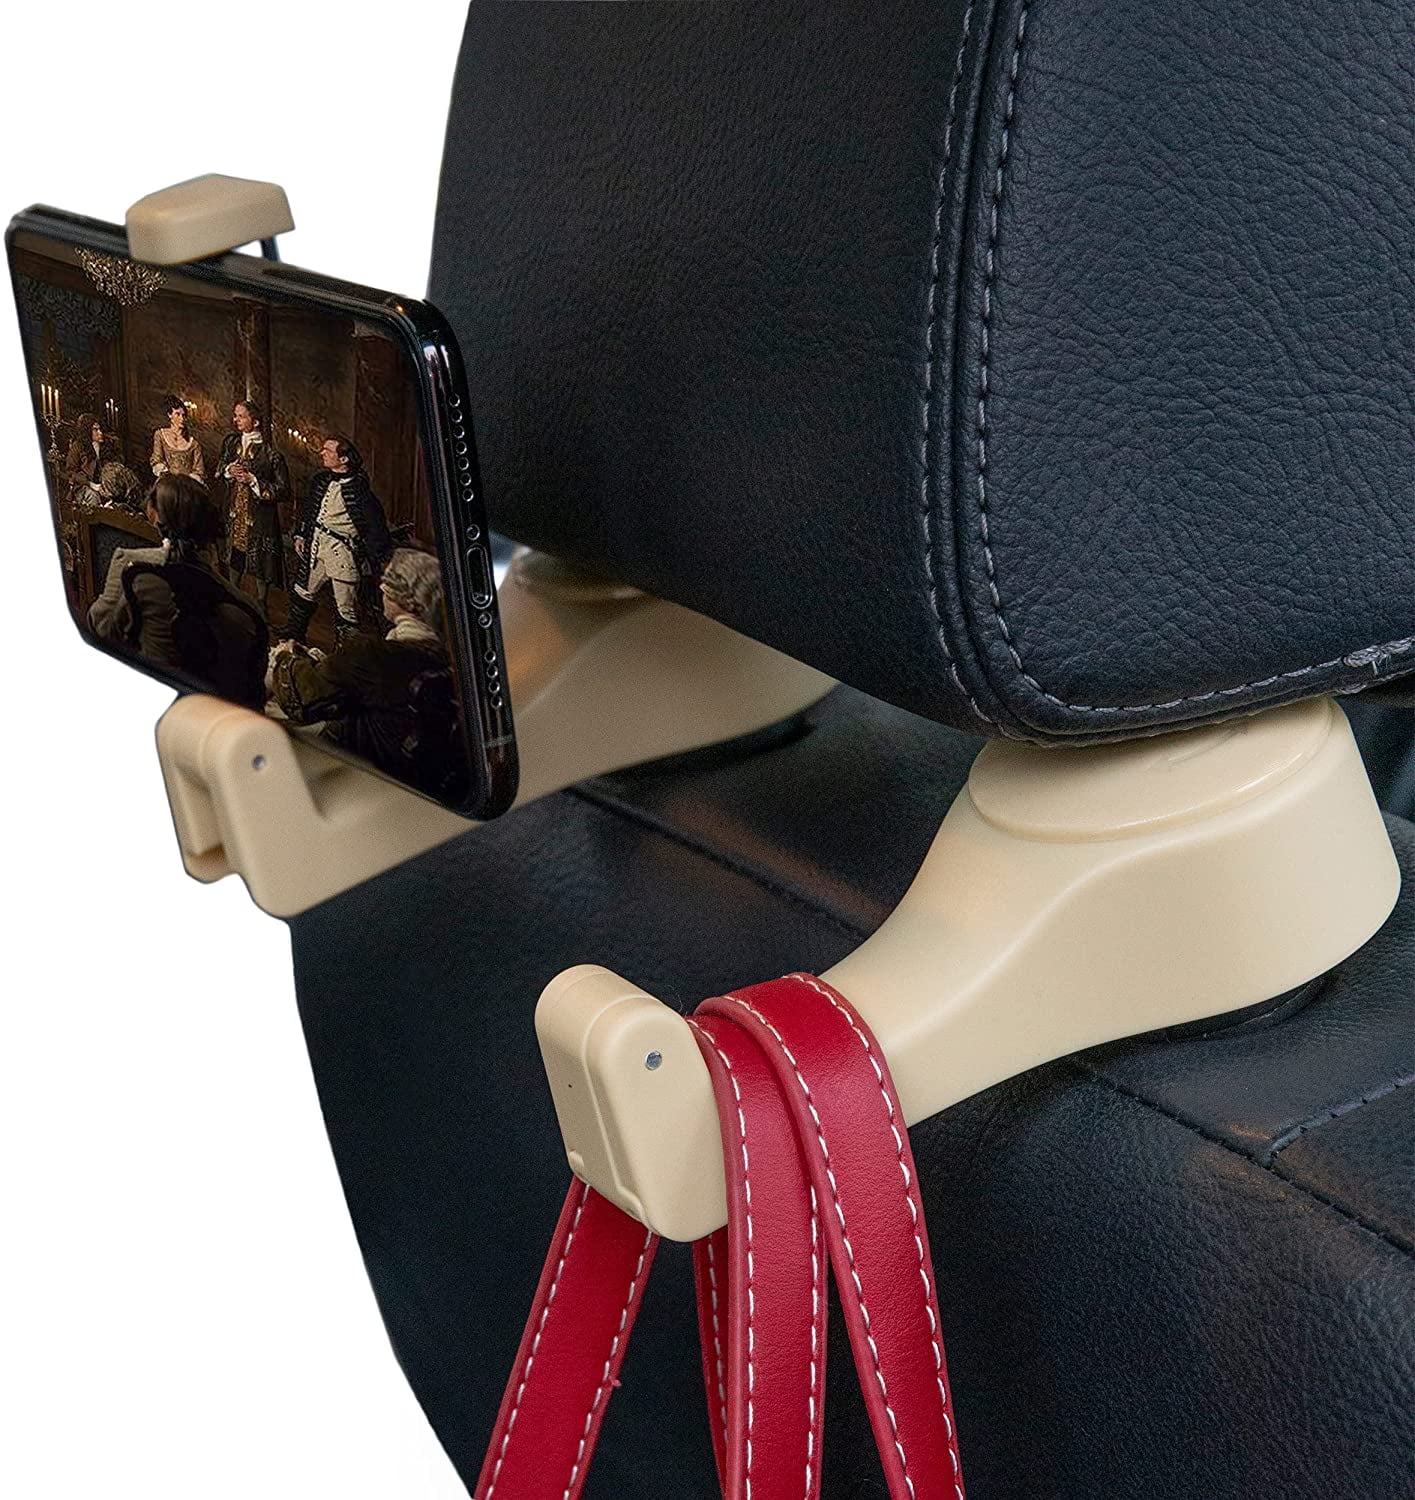 Beige Universal Car Vehicle Back Seat Headrest Hanger Holder Hook for Bag Purse Cloth Grocery 